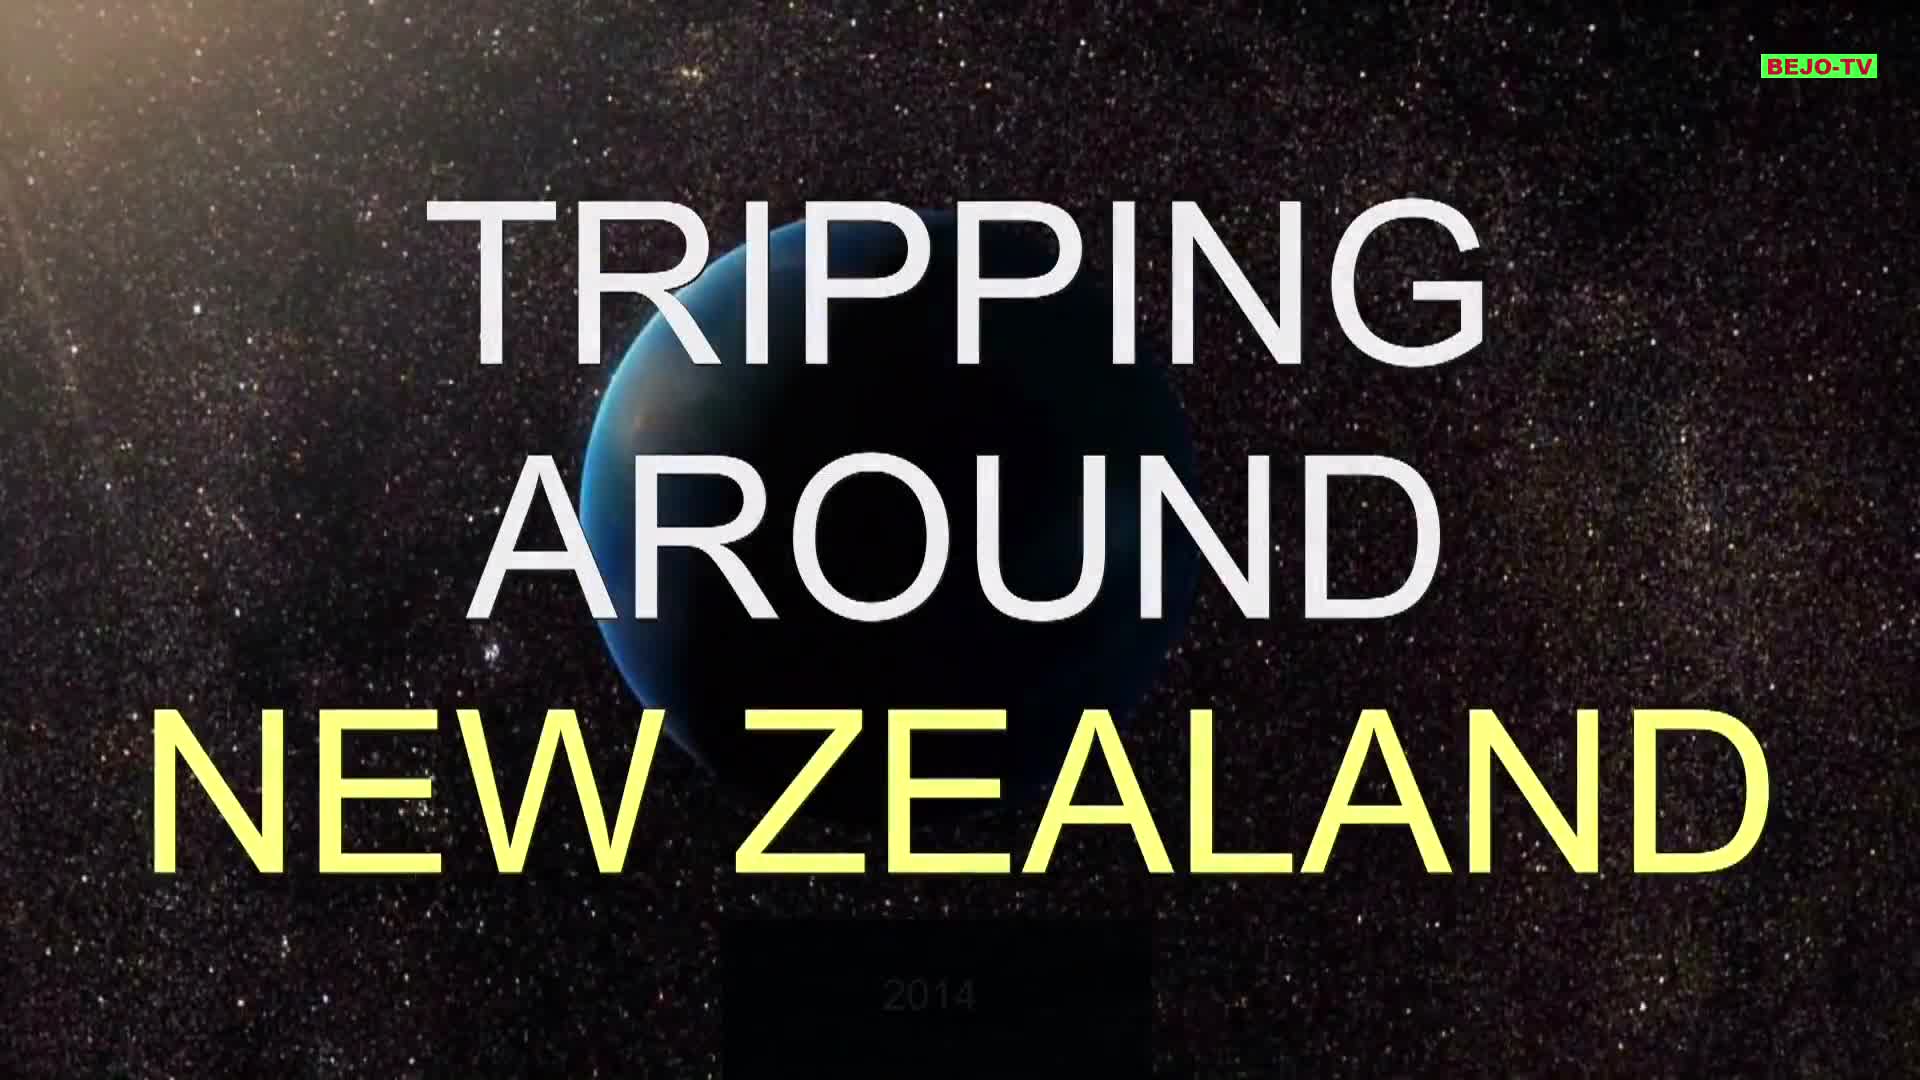 Neuseeland - Paradies am anderen Ende der Welt